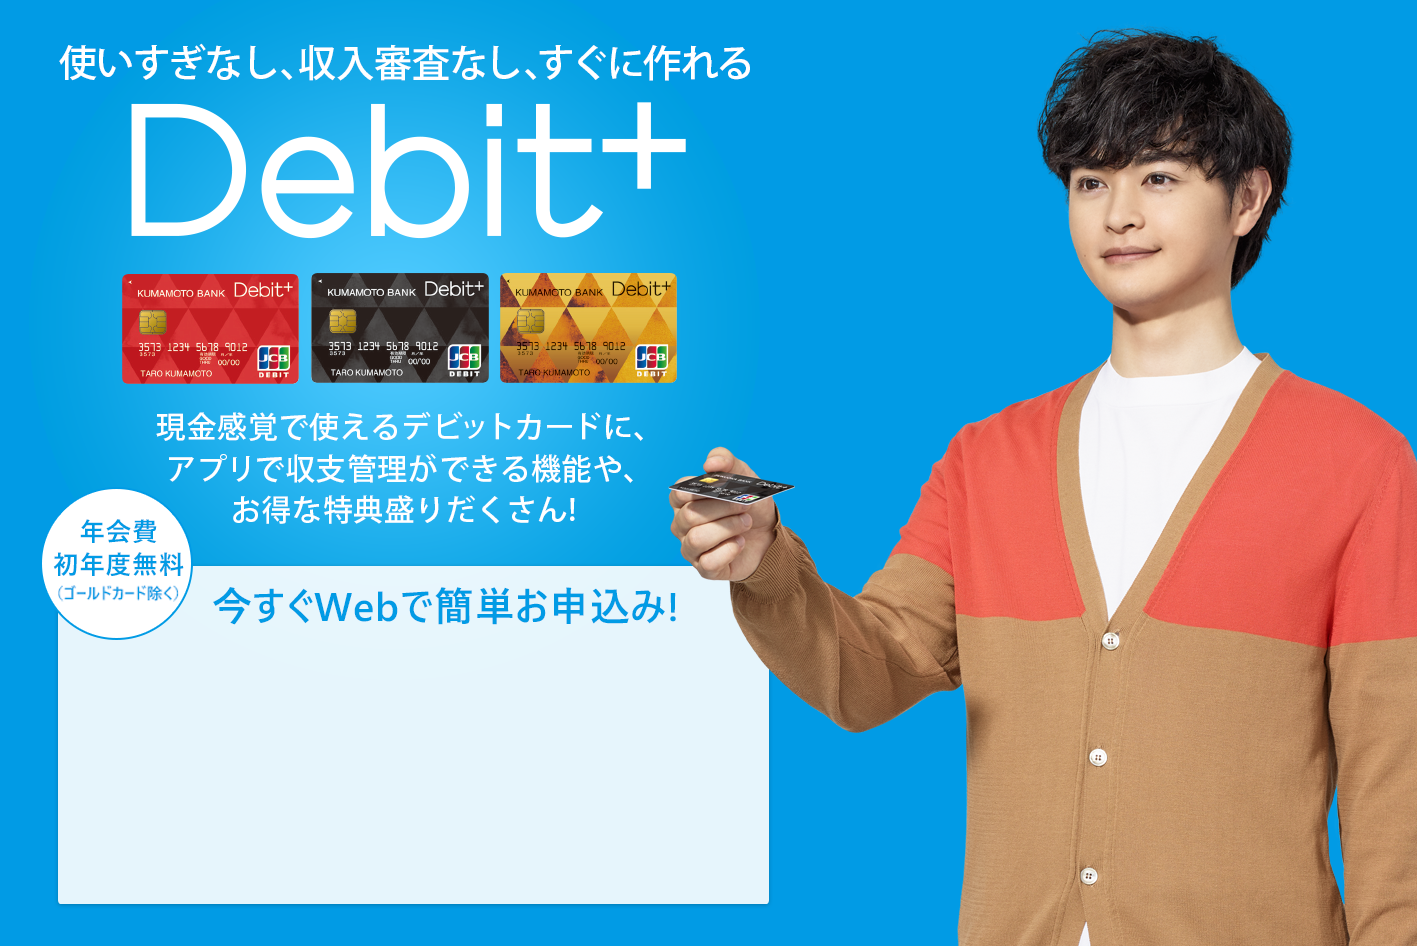 収支まるわかり現金感覚カードDebit+　現金感覚で使えるデビットカードに、熊本銀行ならではの収支まるわかり機能や、お得な特典盛りだくさん！